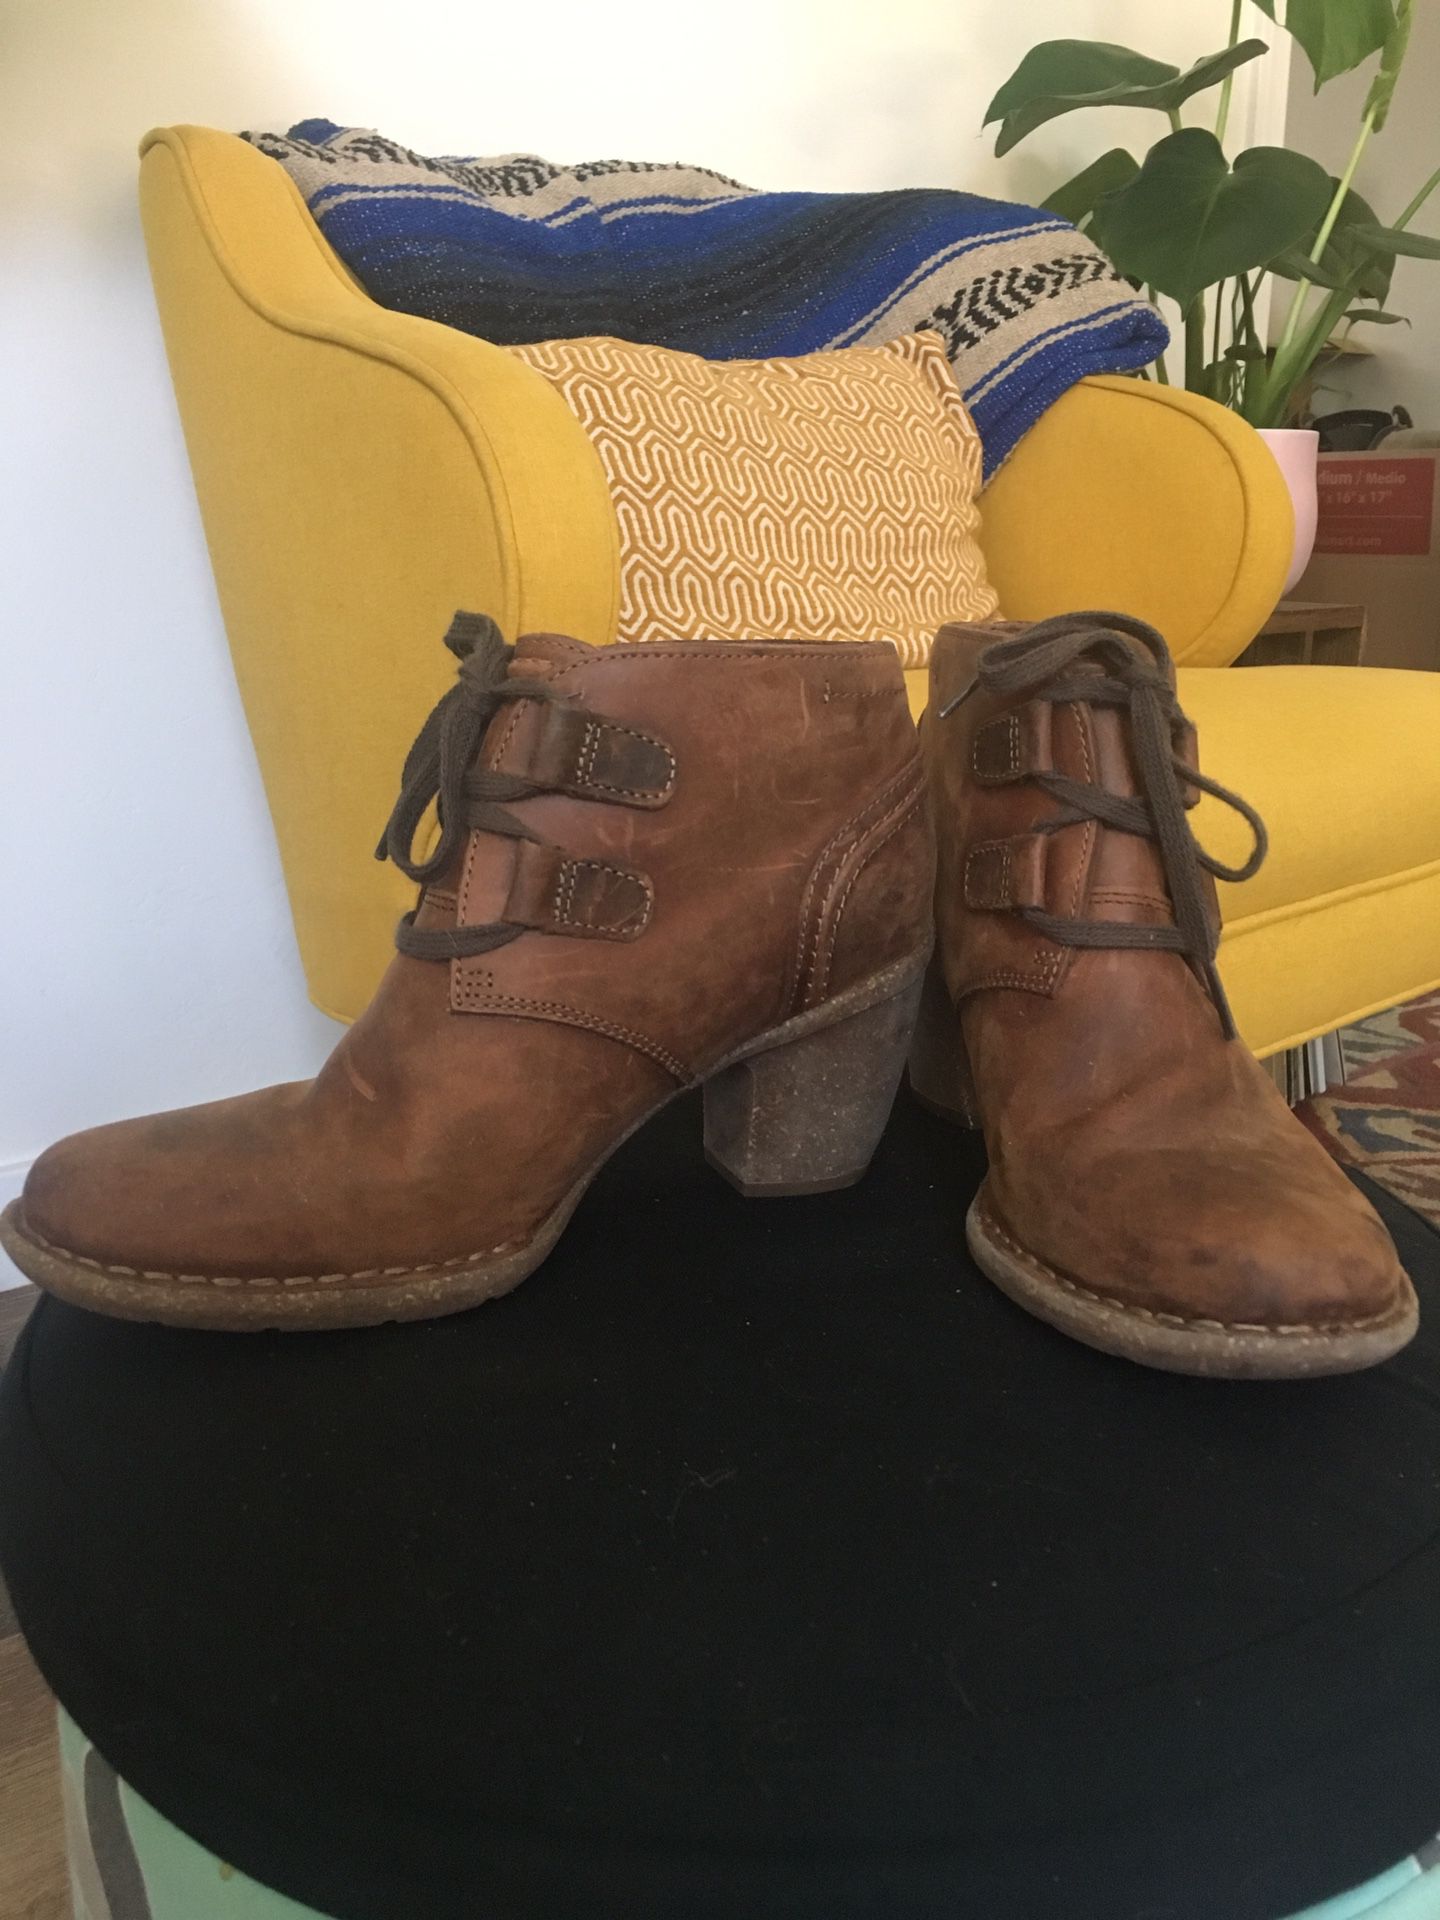 Clark’s women’s leather booties